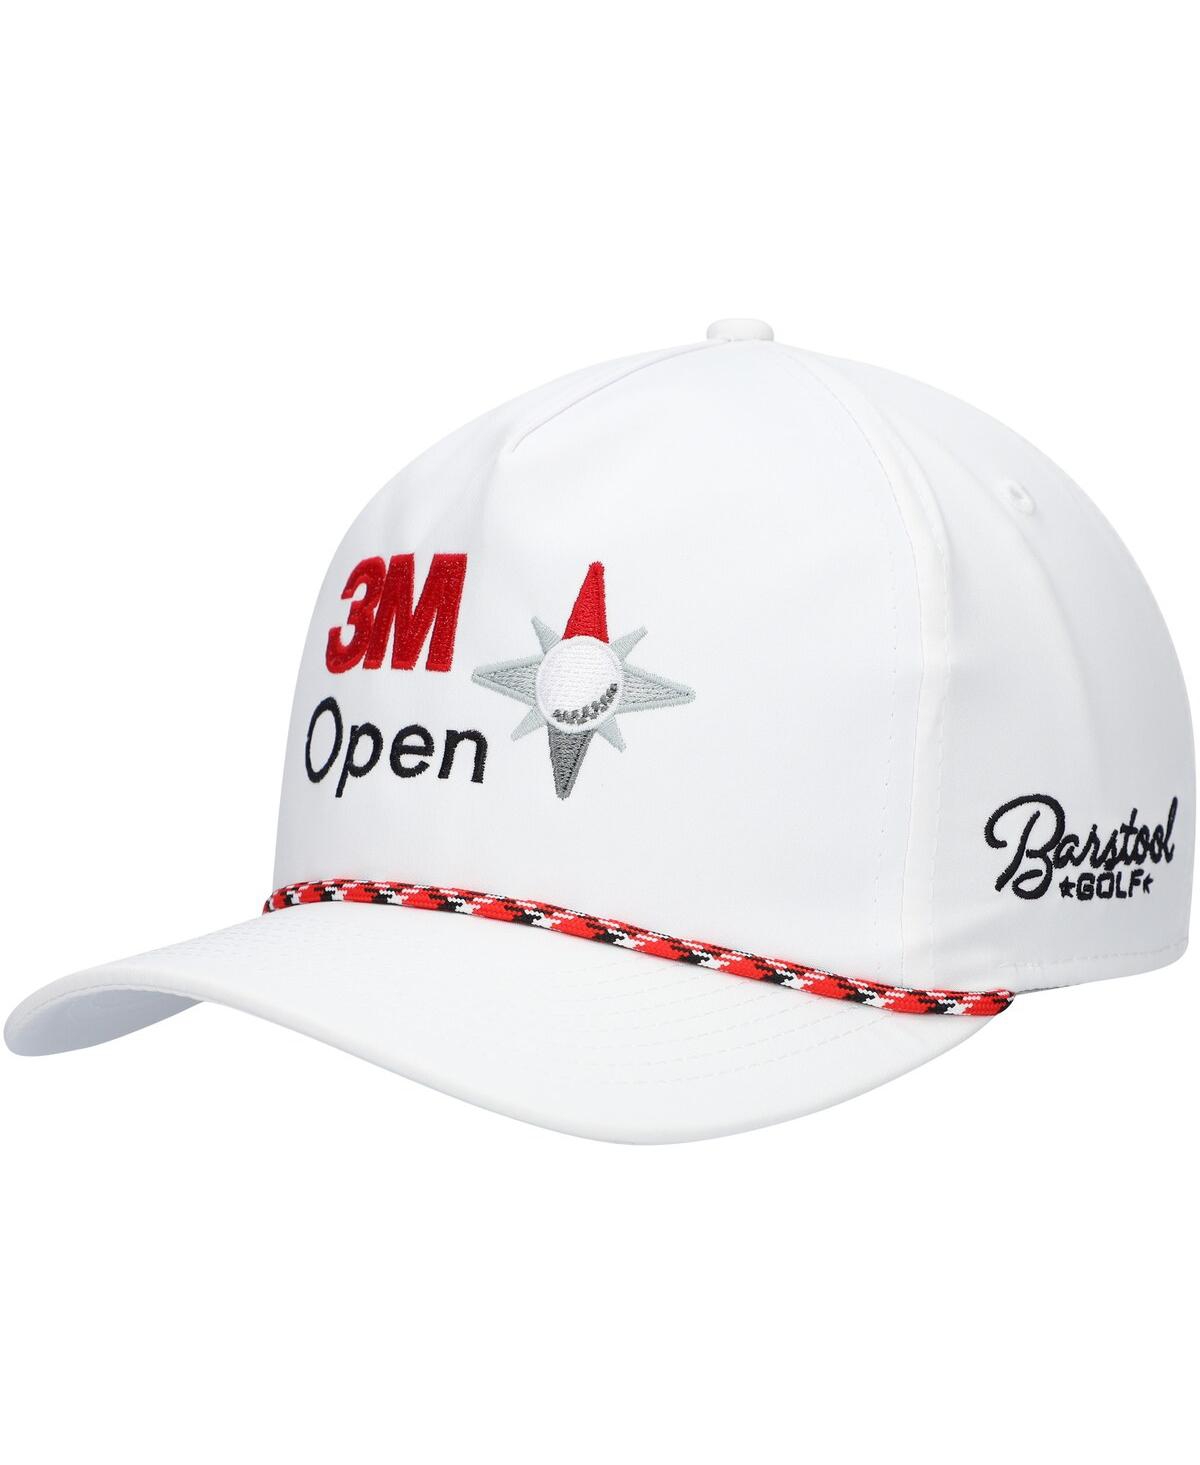 Men's Barstool Golf White 3M Open Rope Snapback Hat - White